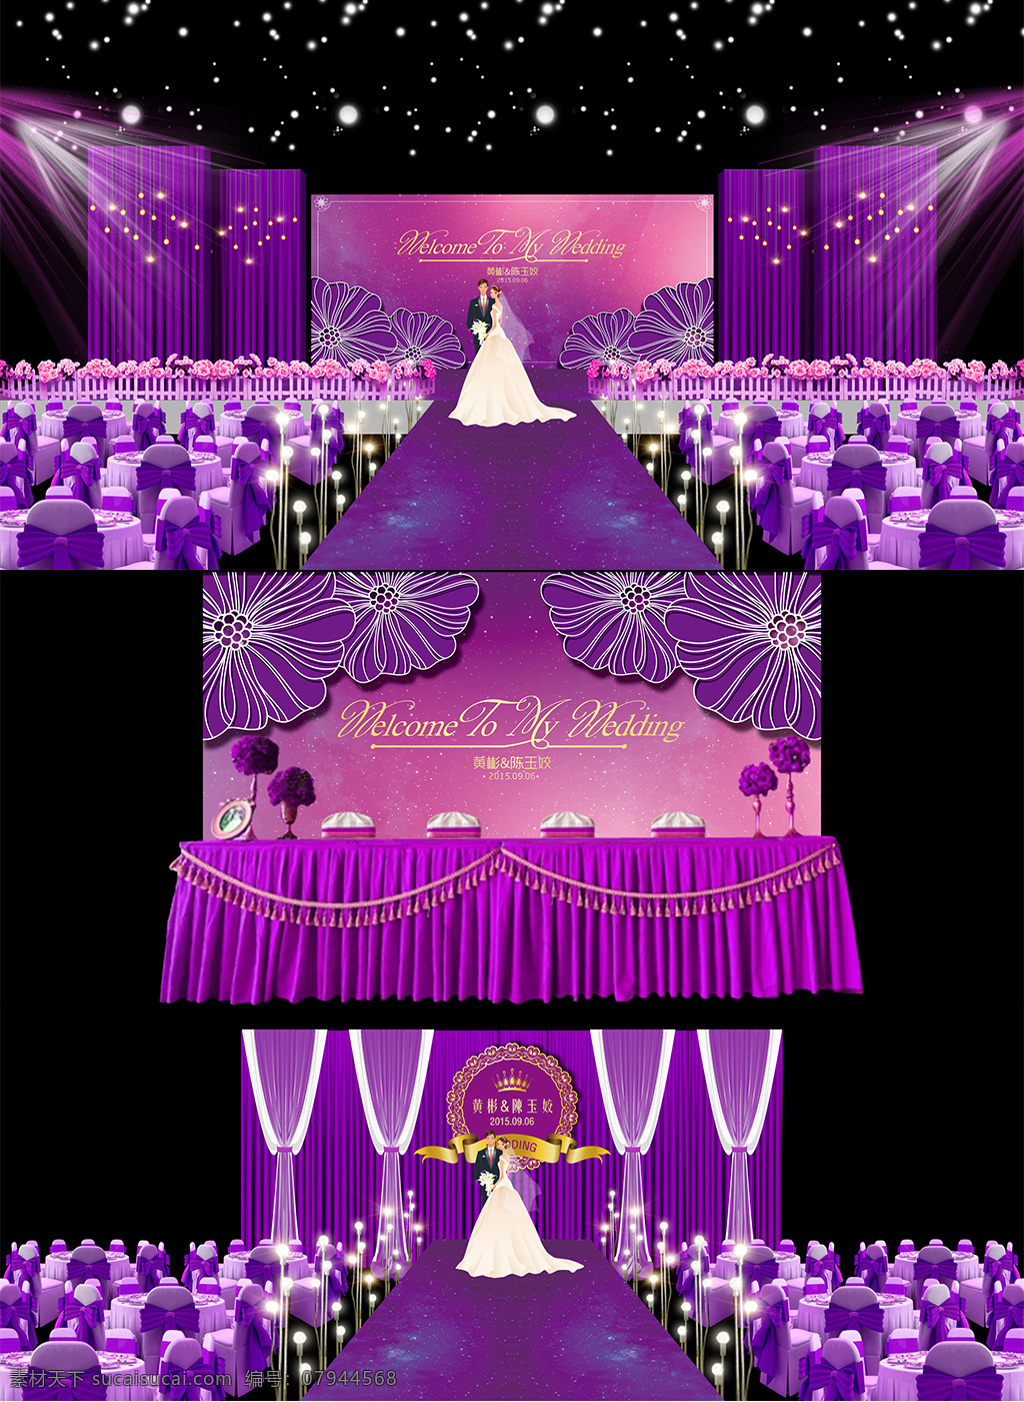 紫色 渐变 婚礼 效果图 分层 文件 背景喷绘 婚礼背景 婚礼素材 婚礼舞台 婚礼效果图 婚庆 礼金台 甜品桌 紫色婚礼